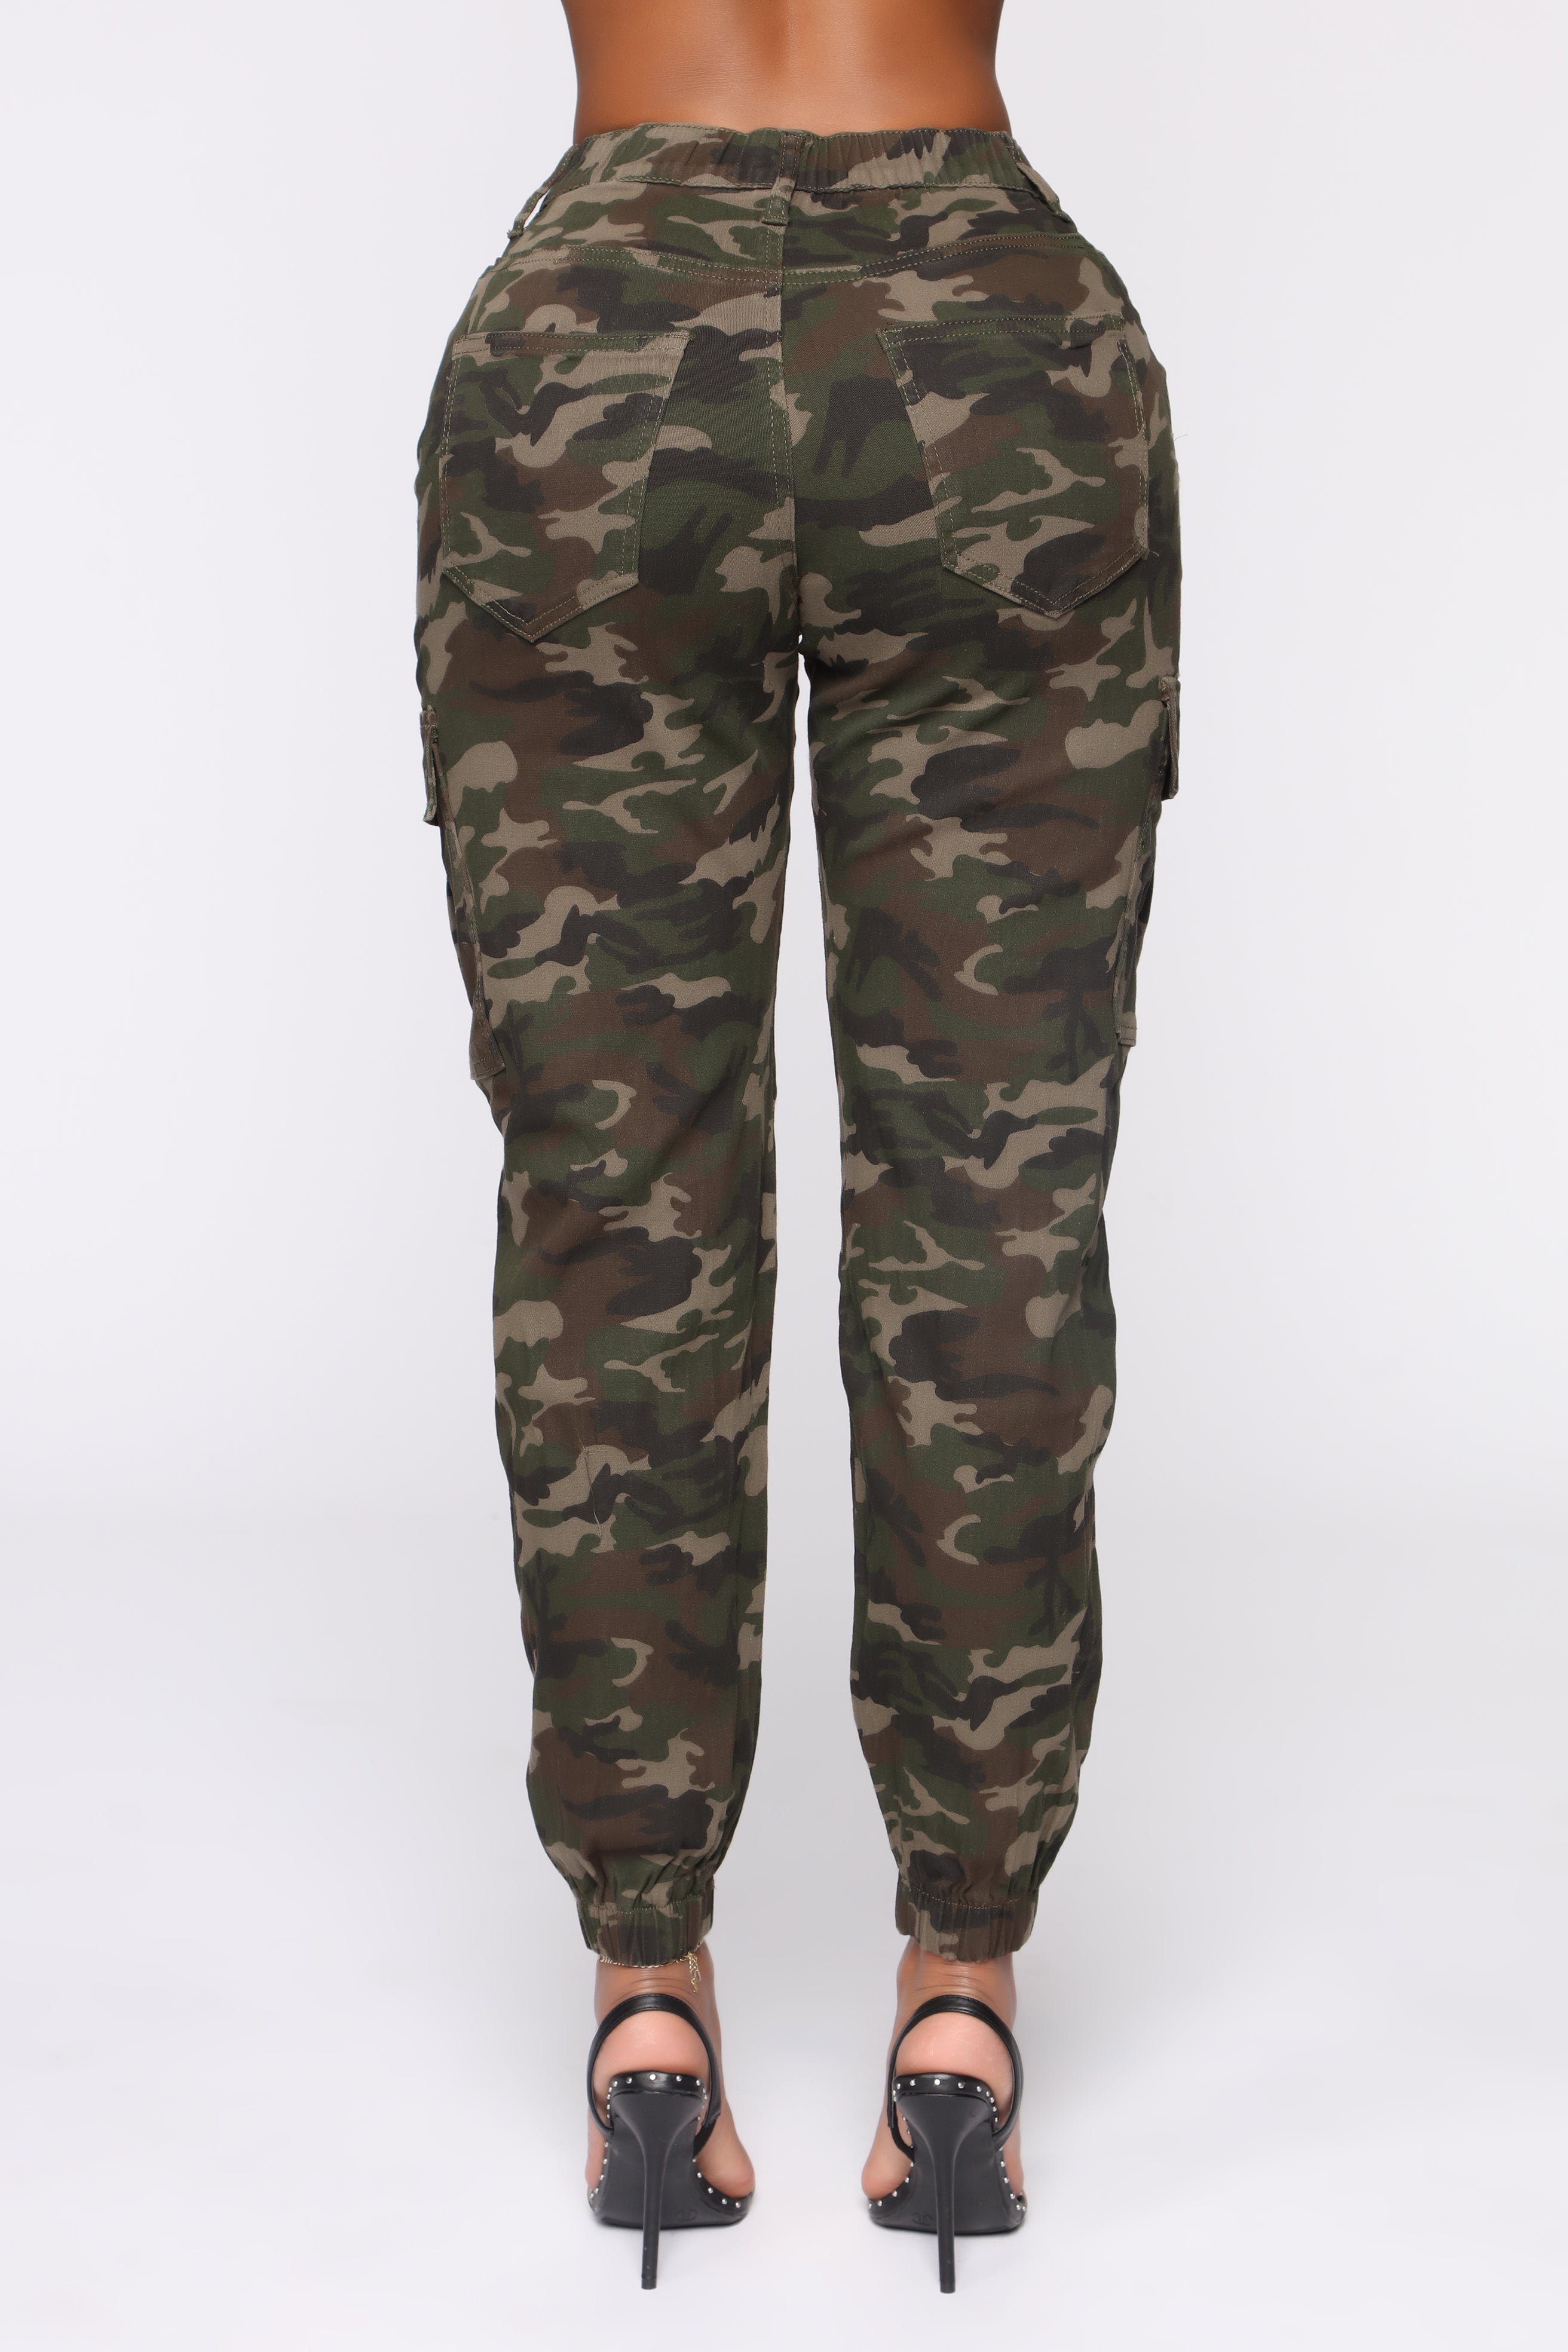 Cadet Kylie Camp Pants - Camo – Fashion Nova